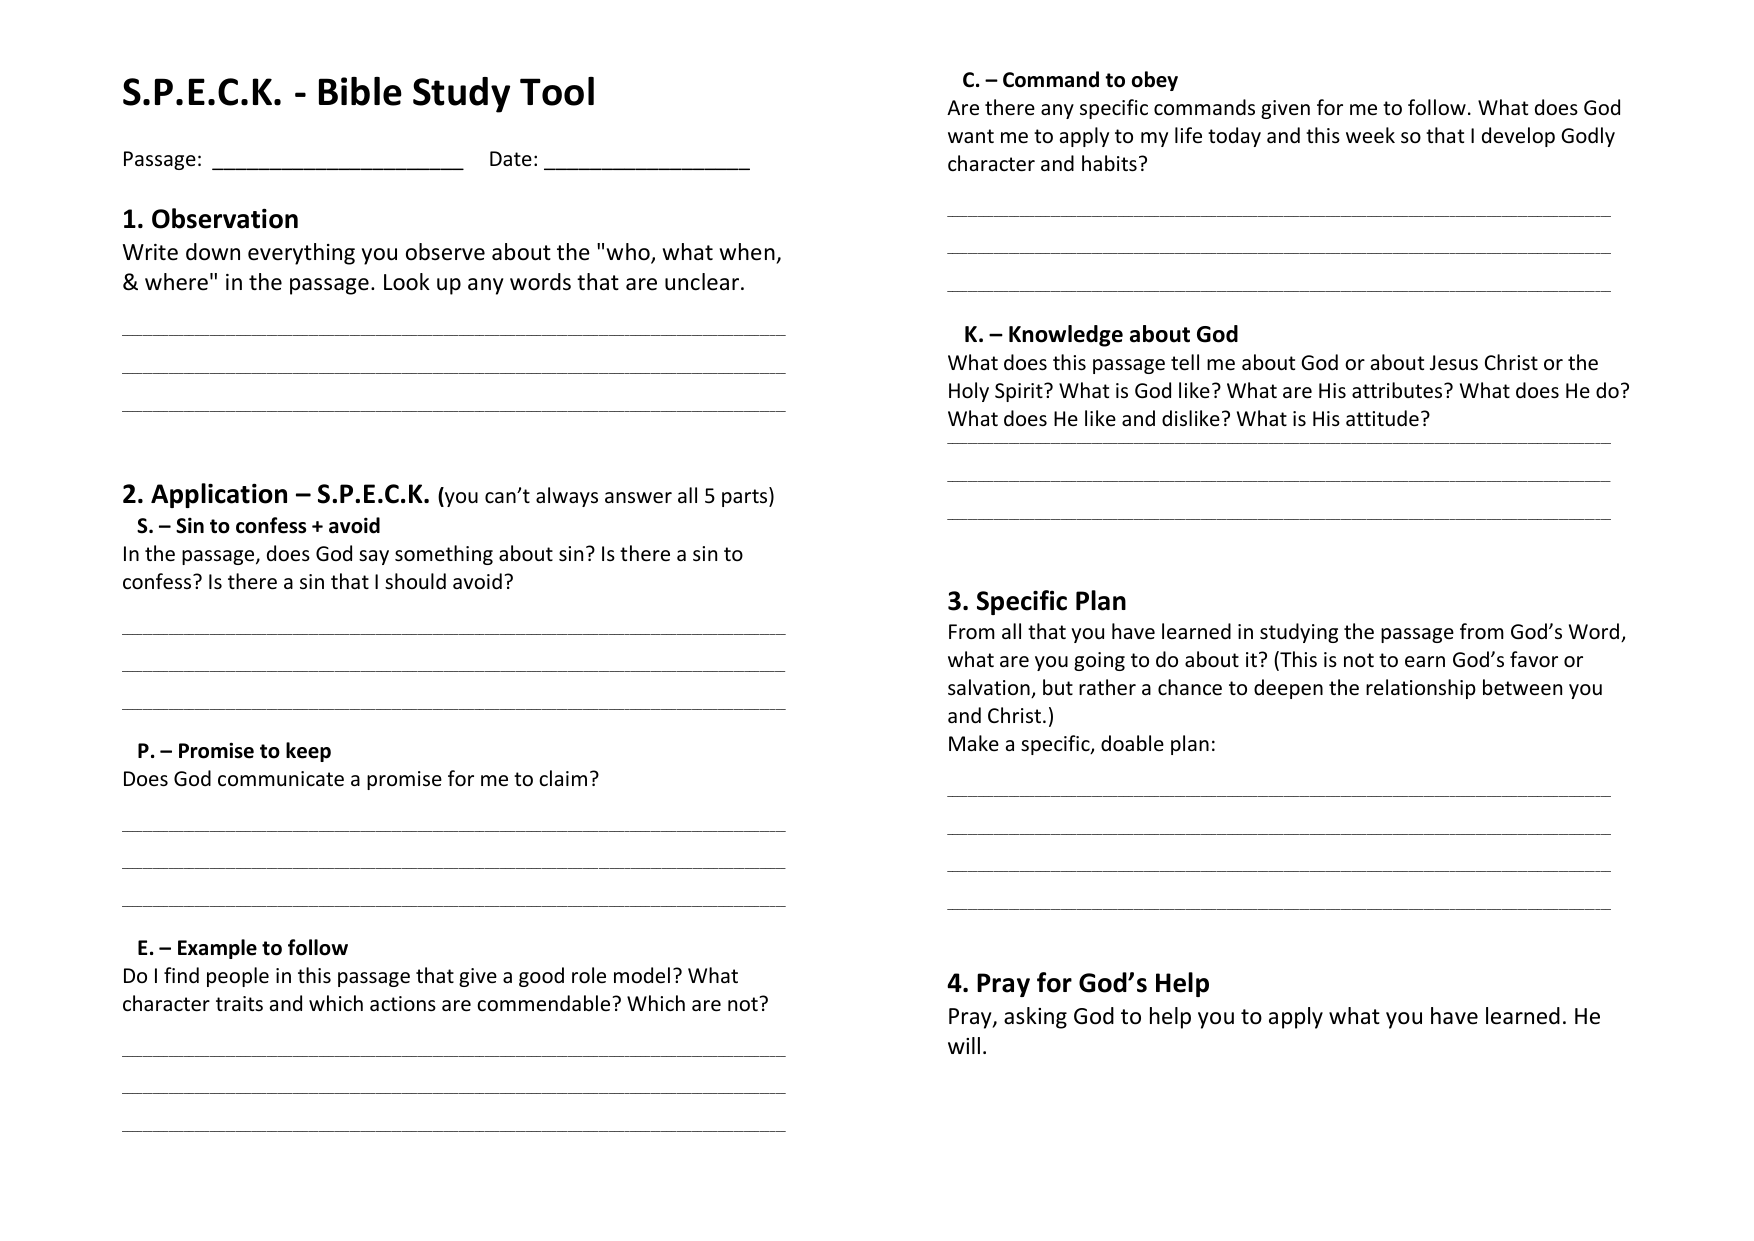 S P E C K Bible Study Tool A5 1